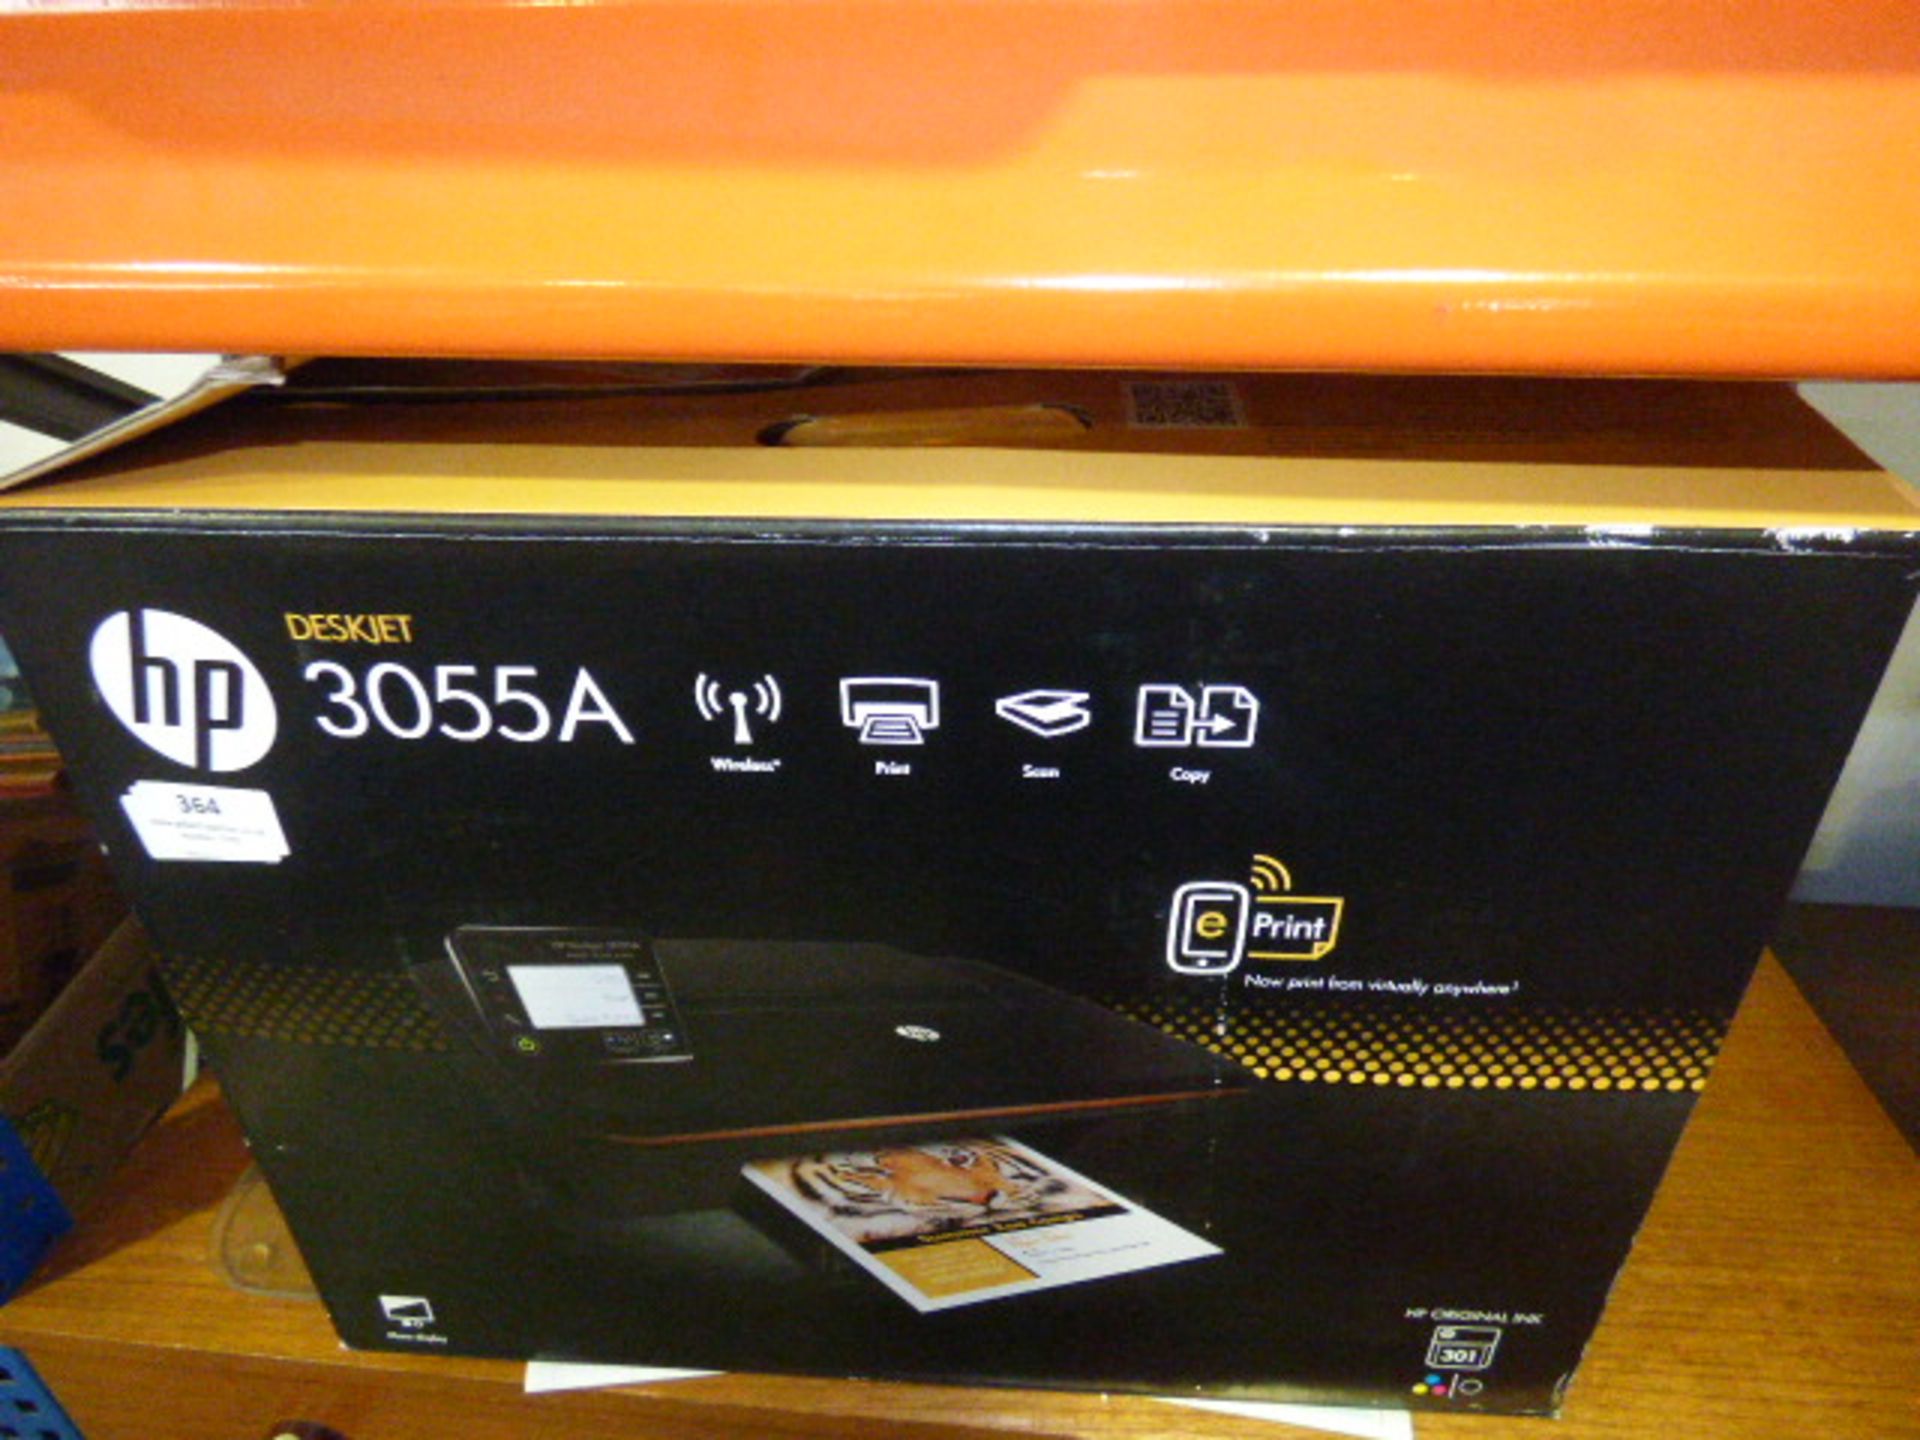 Hp Deskjet 3055a Printer